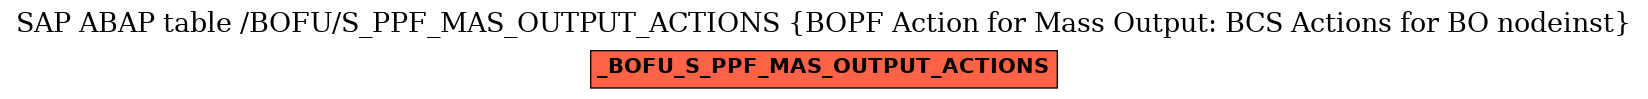 E-R Diagram for table /BOFU/S_PPF_MAS_OUTPUT_ACTIONS (BOPF Action for Mass Output: BCS Actions for BO nodeinst)